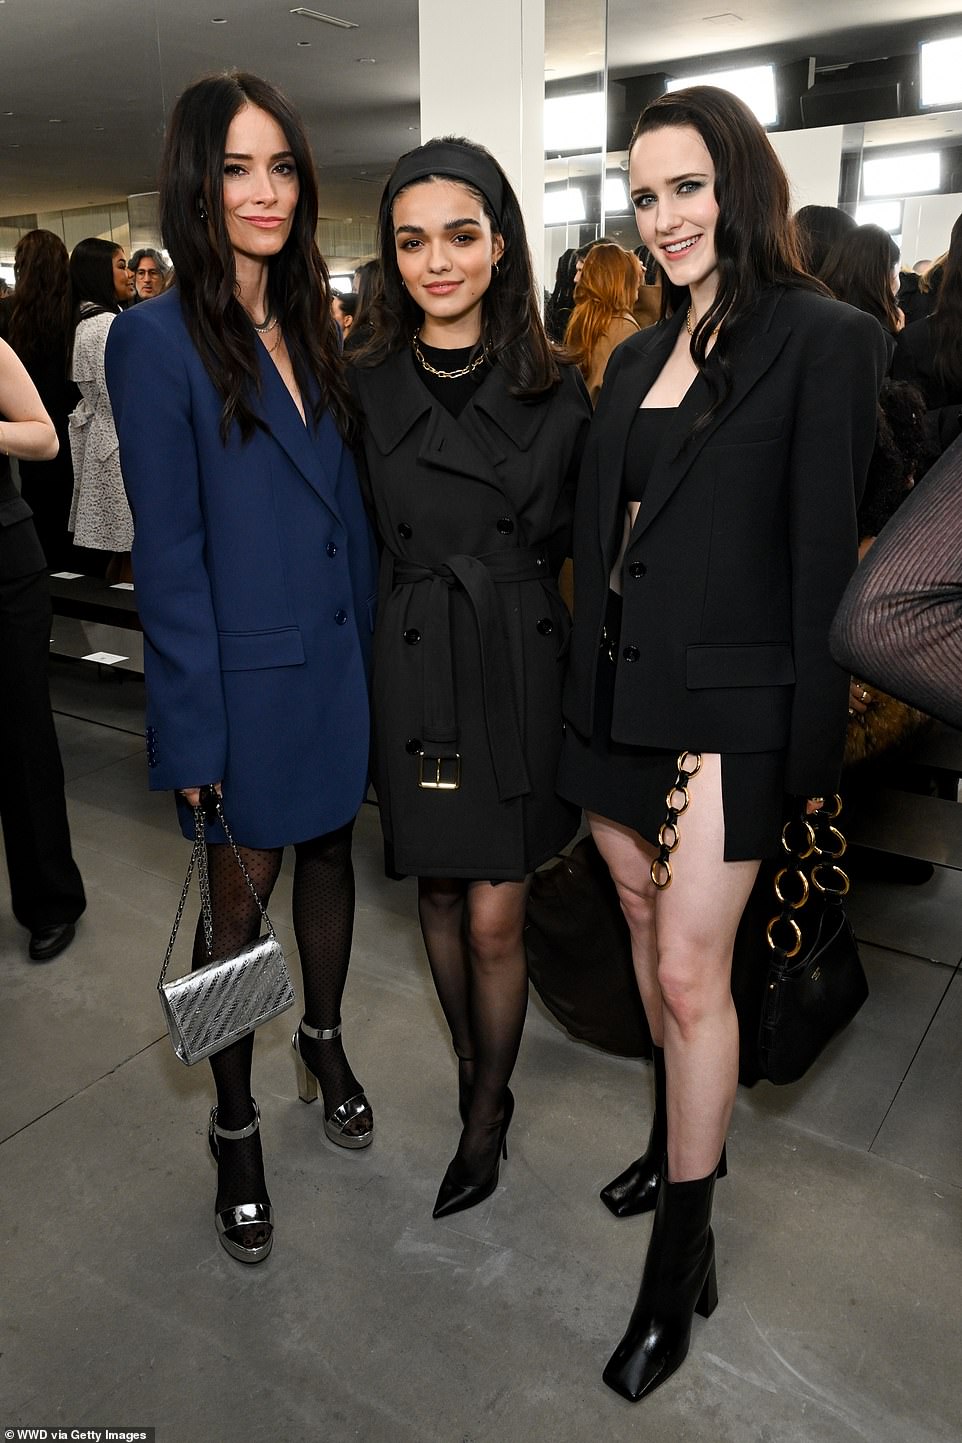 Эбигейл Спенсер, Рэйчел Зеглер и Рэйчел Броснахэн на мероприятии в рамках Недели моды Ready to Wear в Нью-Йорке.